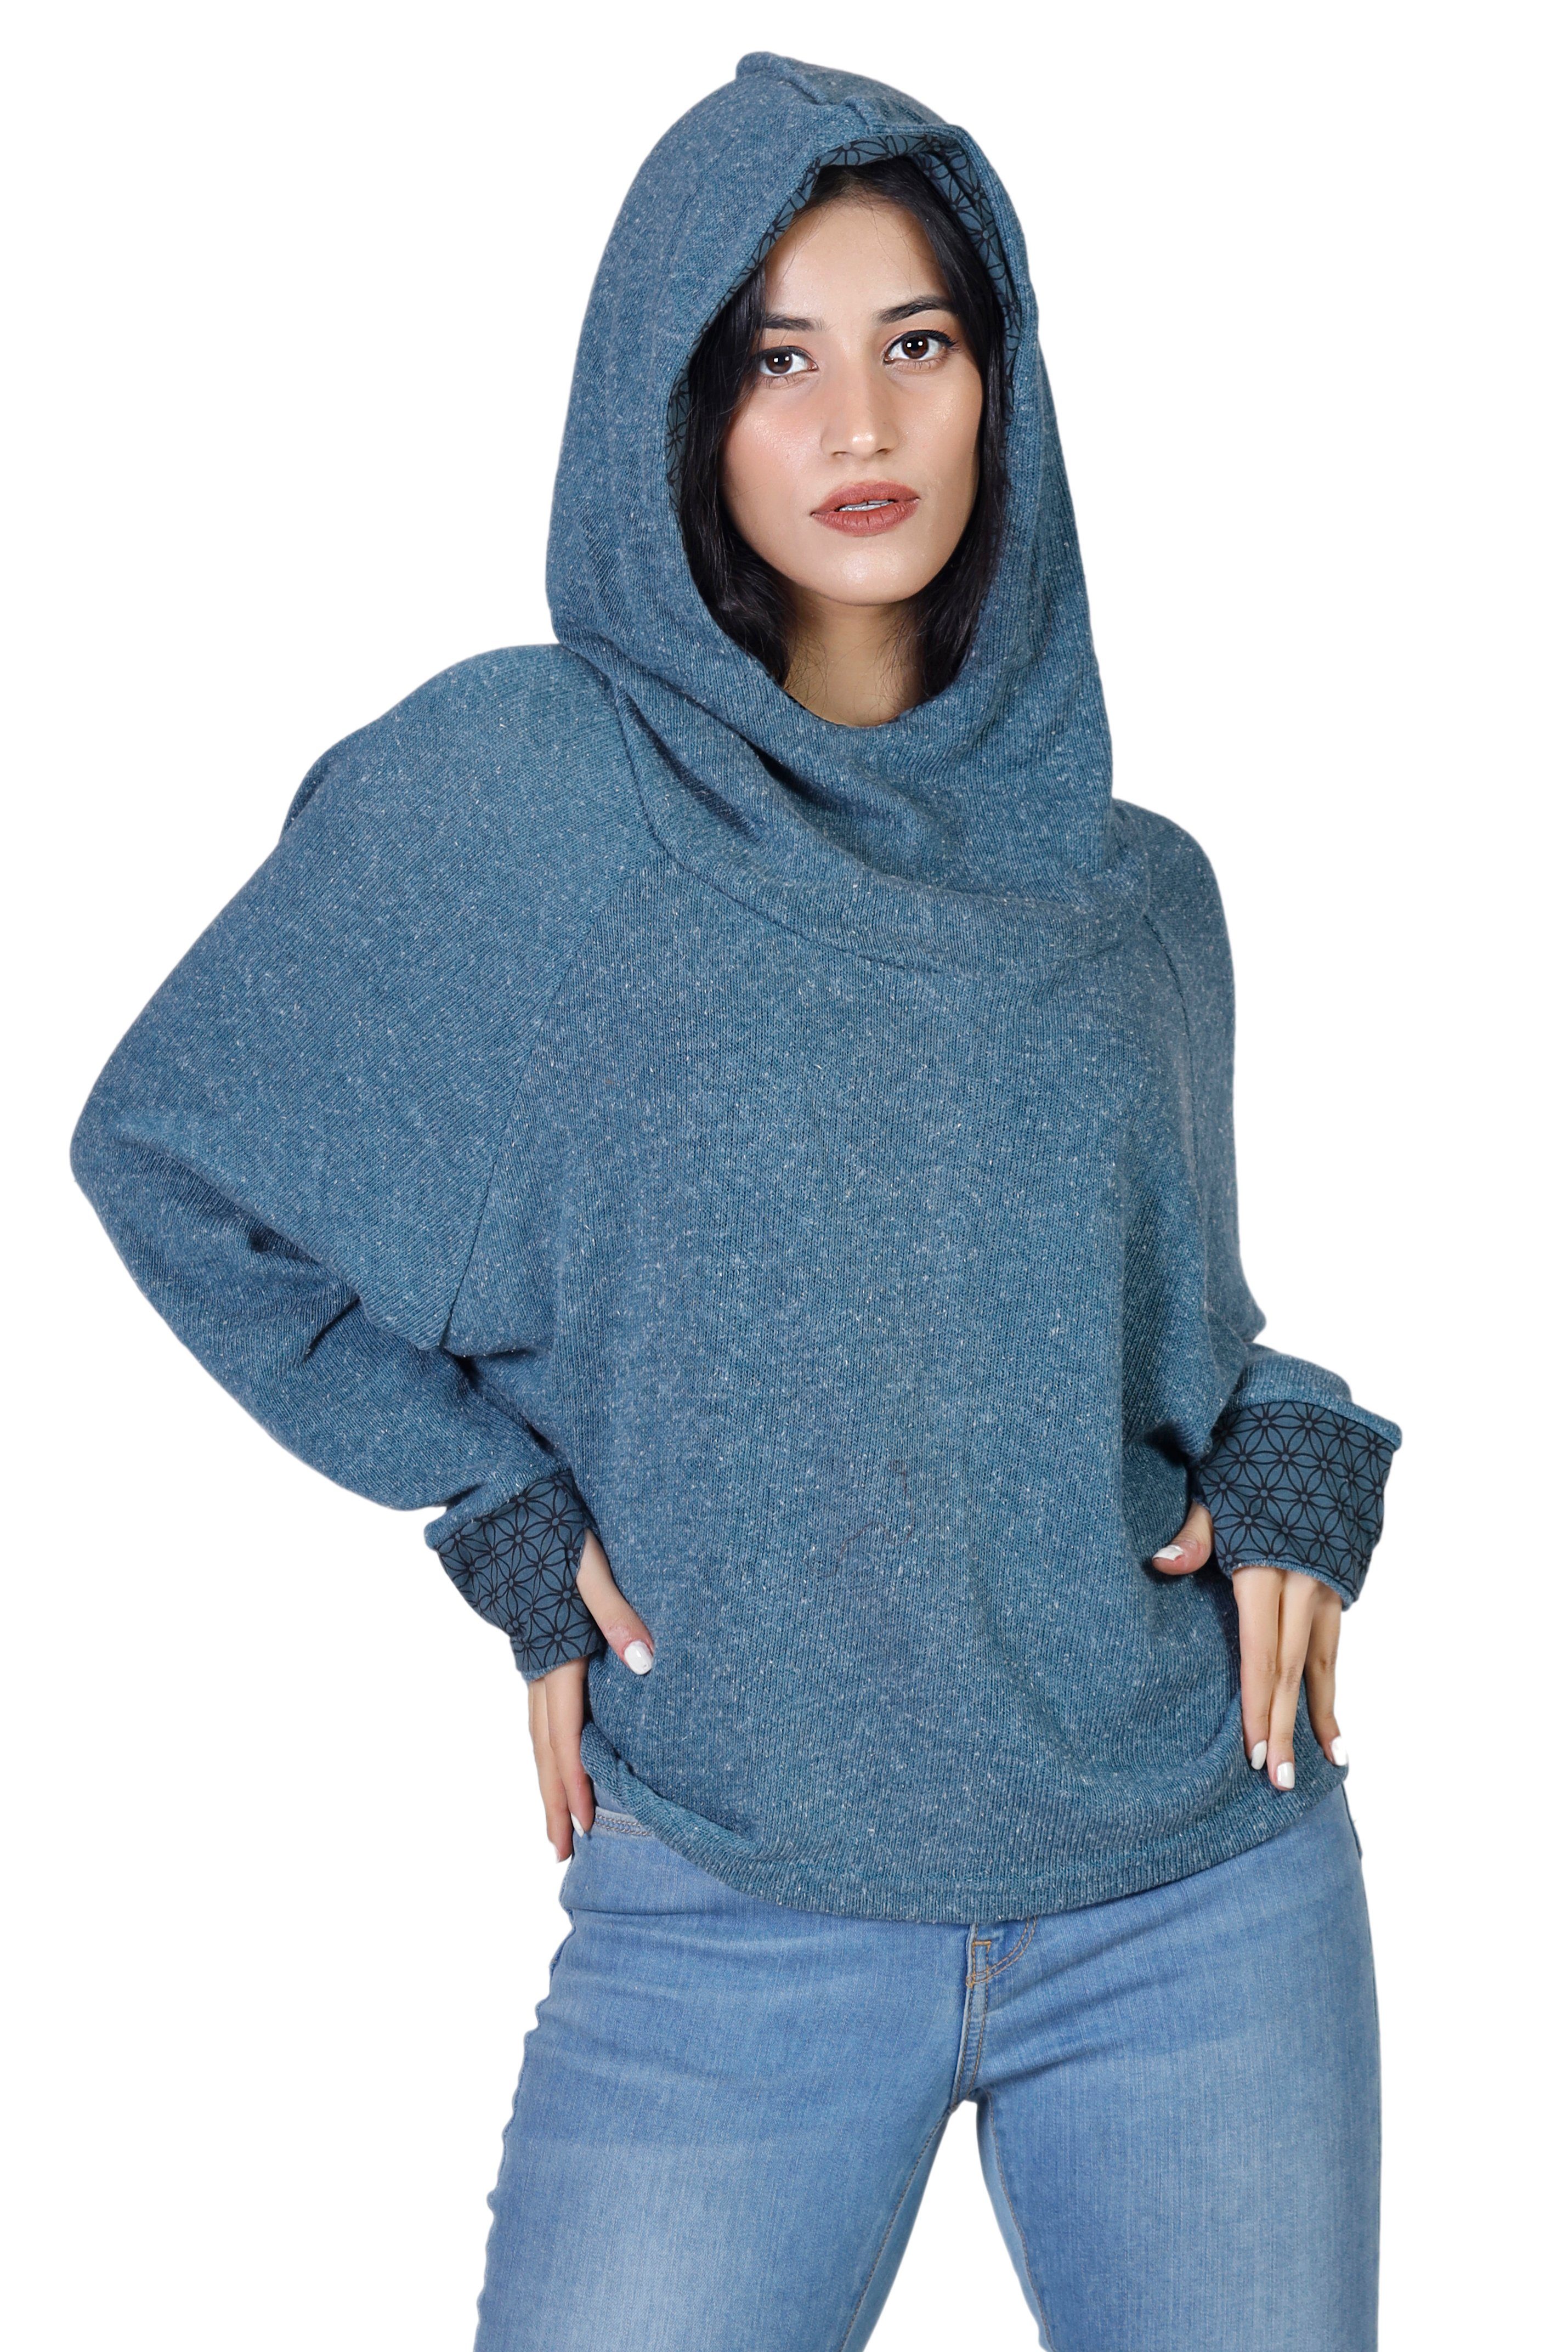 Pullover, taubenblau Sweatshirt, Kapuzenpullover Bekleidung Guru-Shop Hoody, alternative -.. Longsleeve